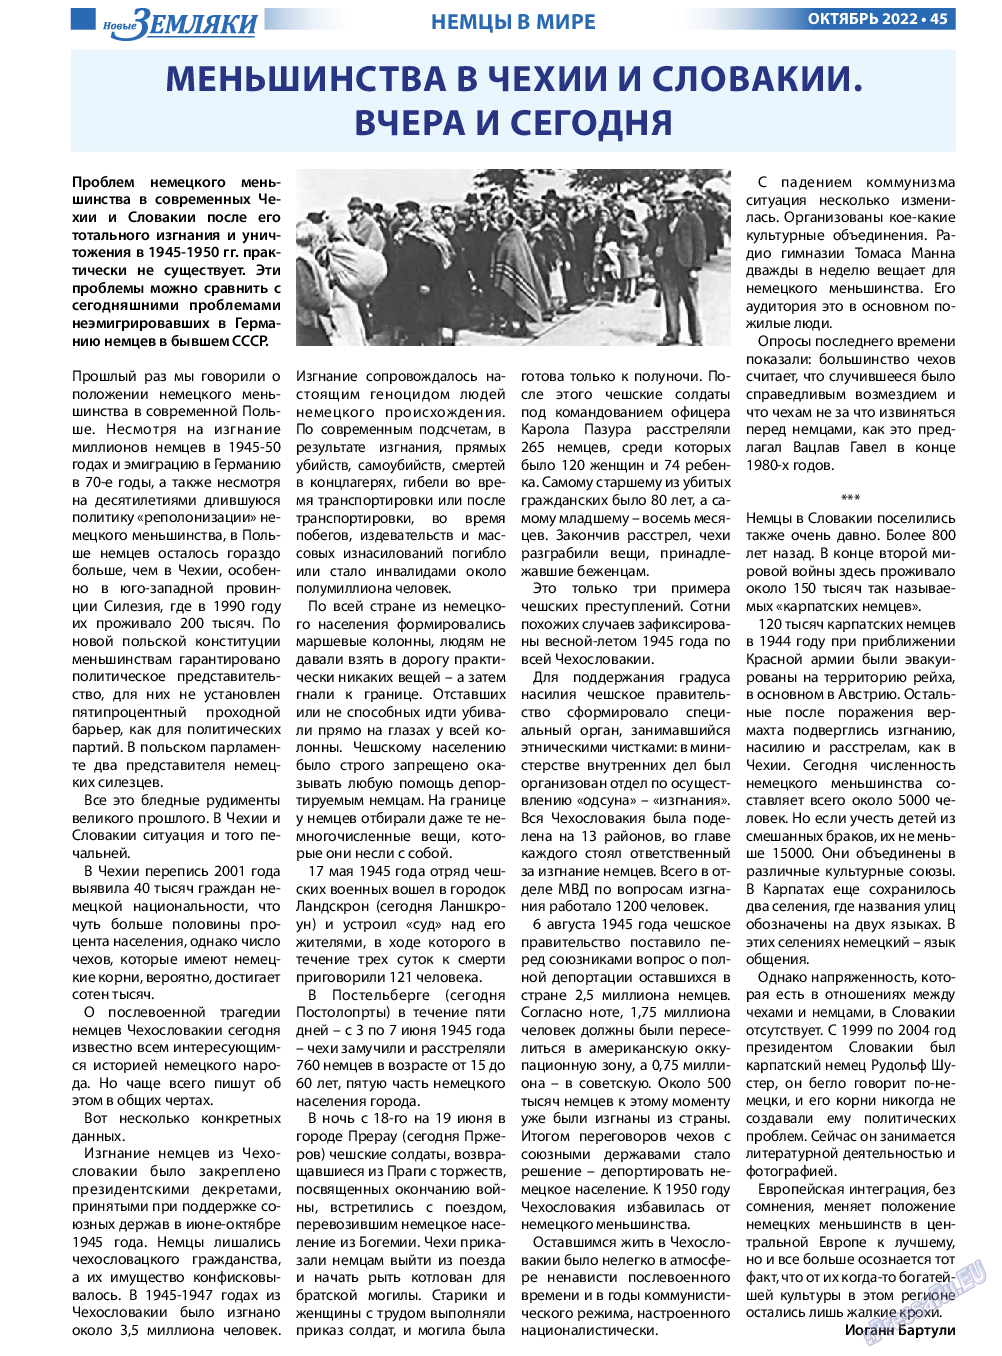 Новые Земляки, газета. 2022 №10 стр.45